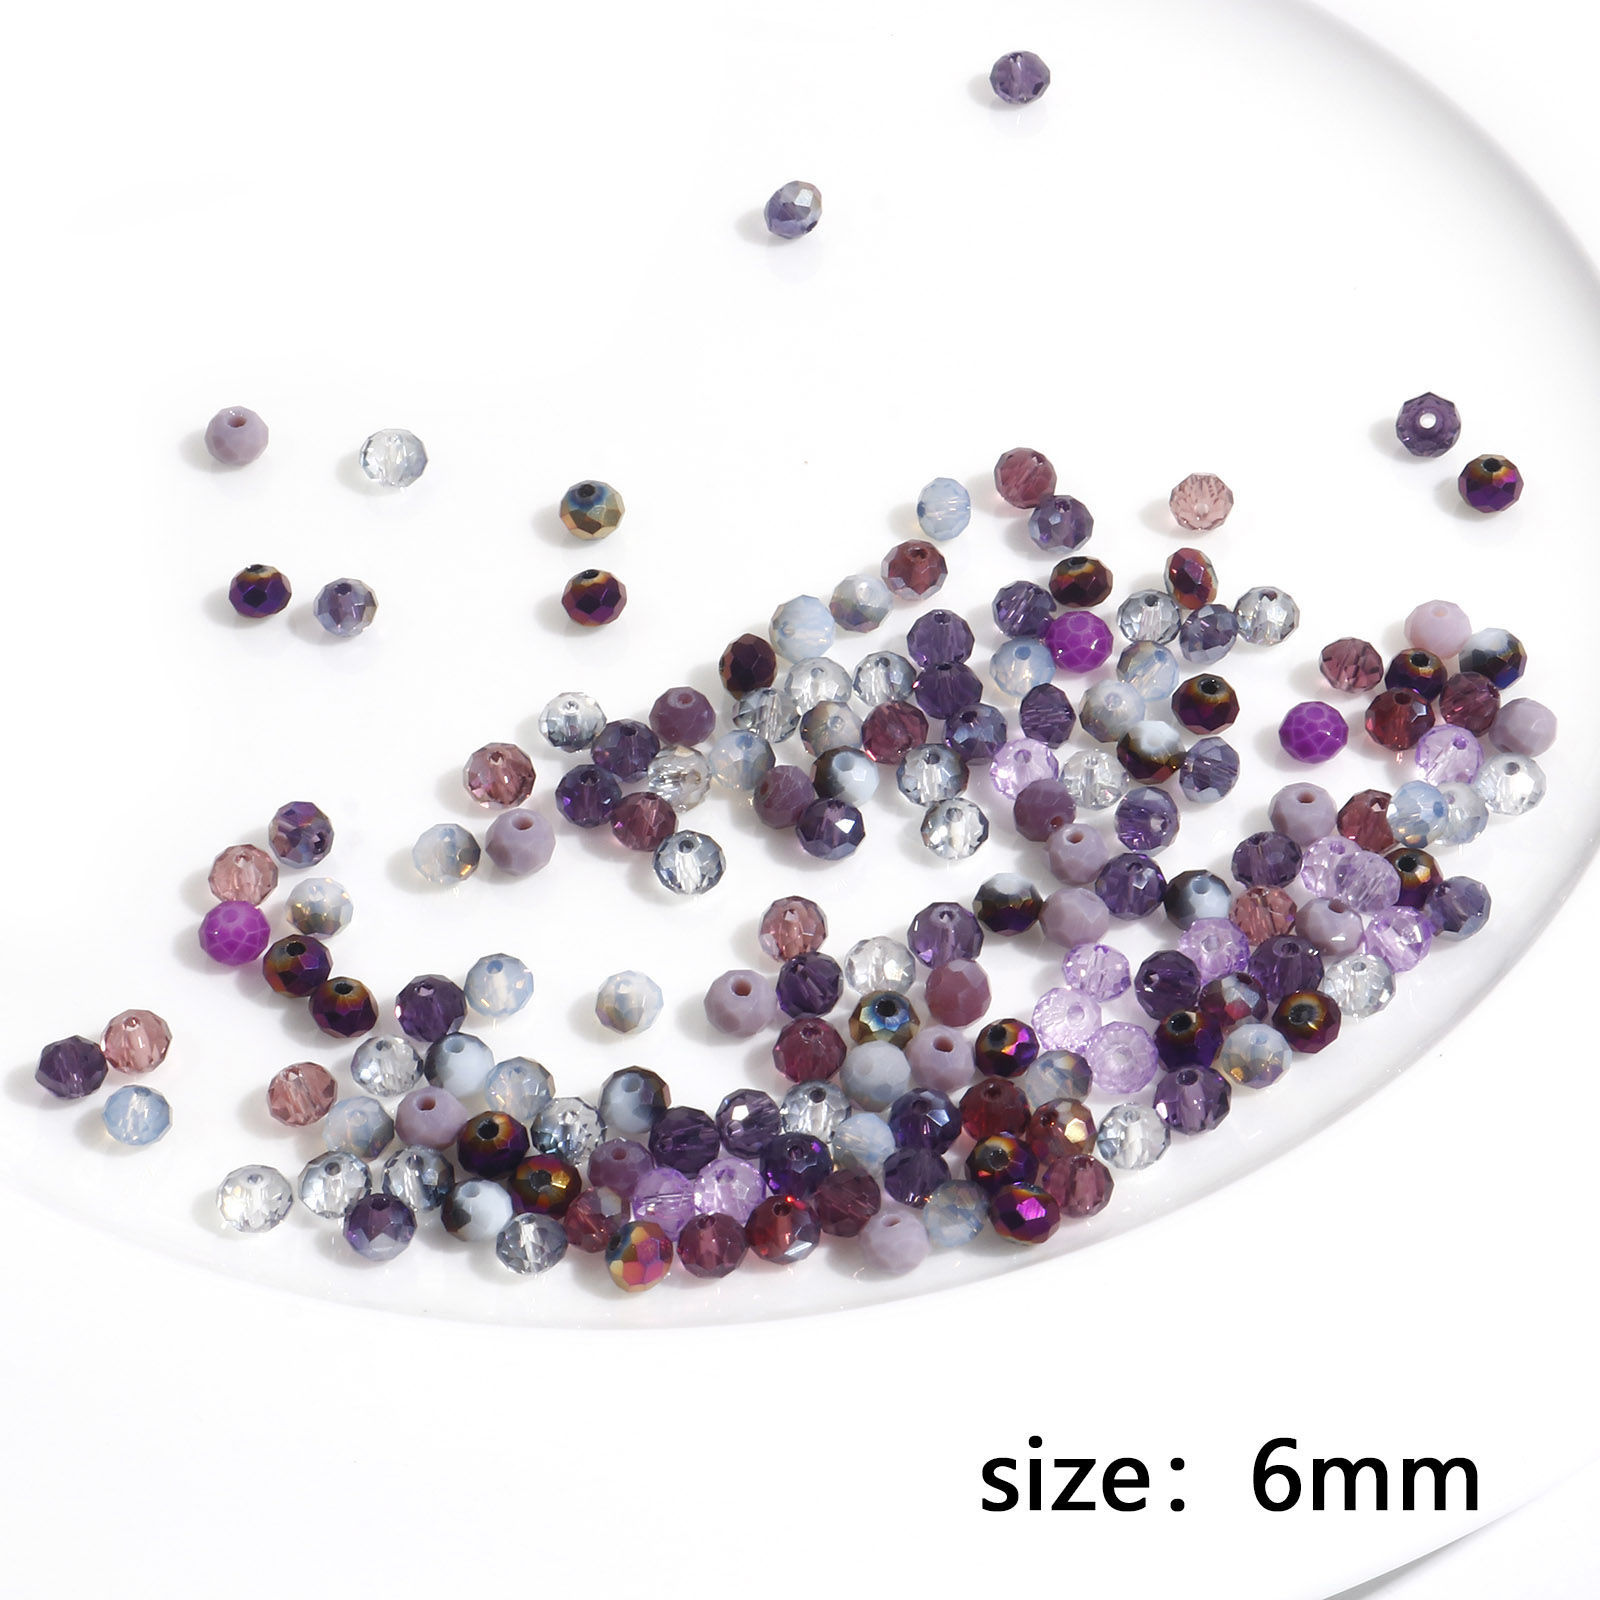 Bild von Glasperlen, rund, mehrfarbig, nach dem Zufallsprinzip facettiert, ca. 6 mm Durchmesser